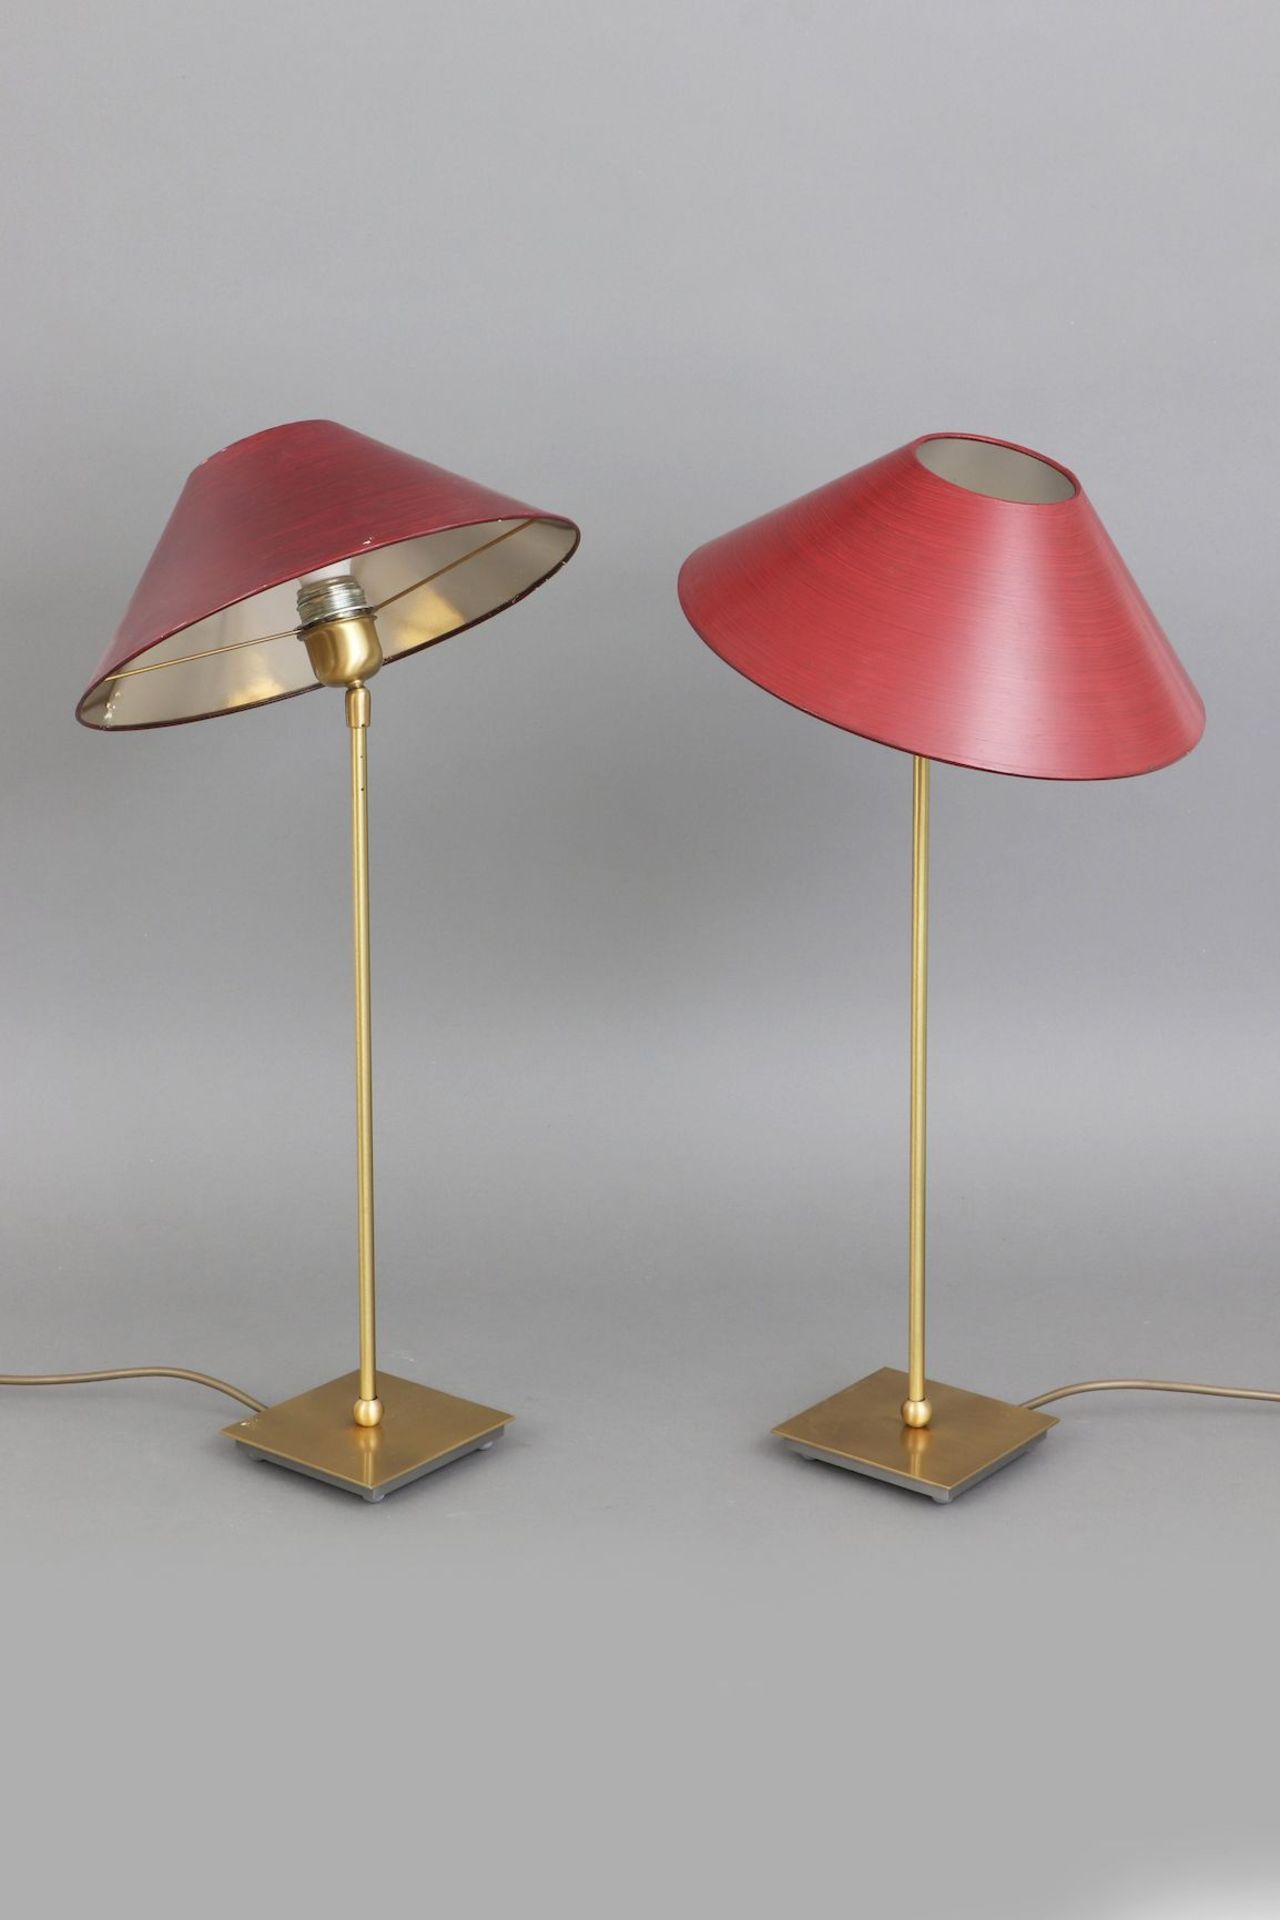 Paar Tischlampen - Image 2 of 3